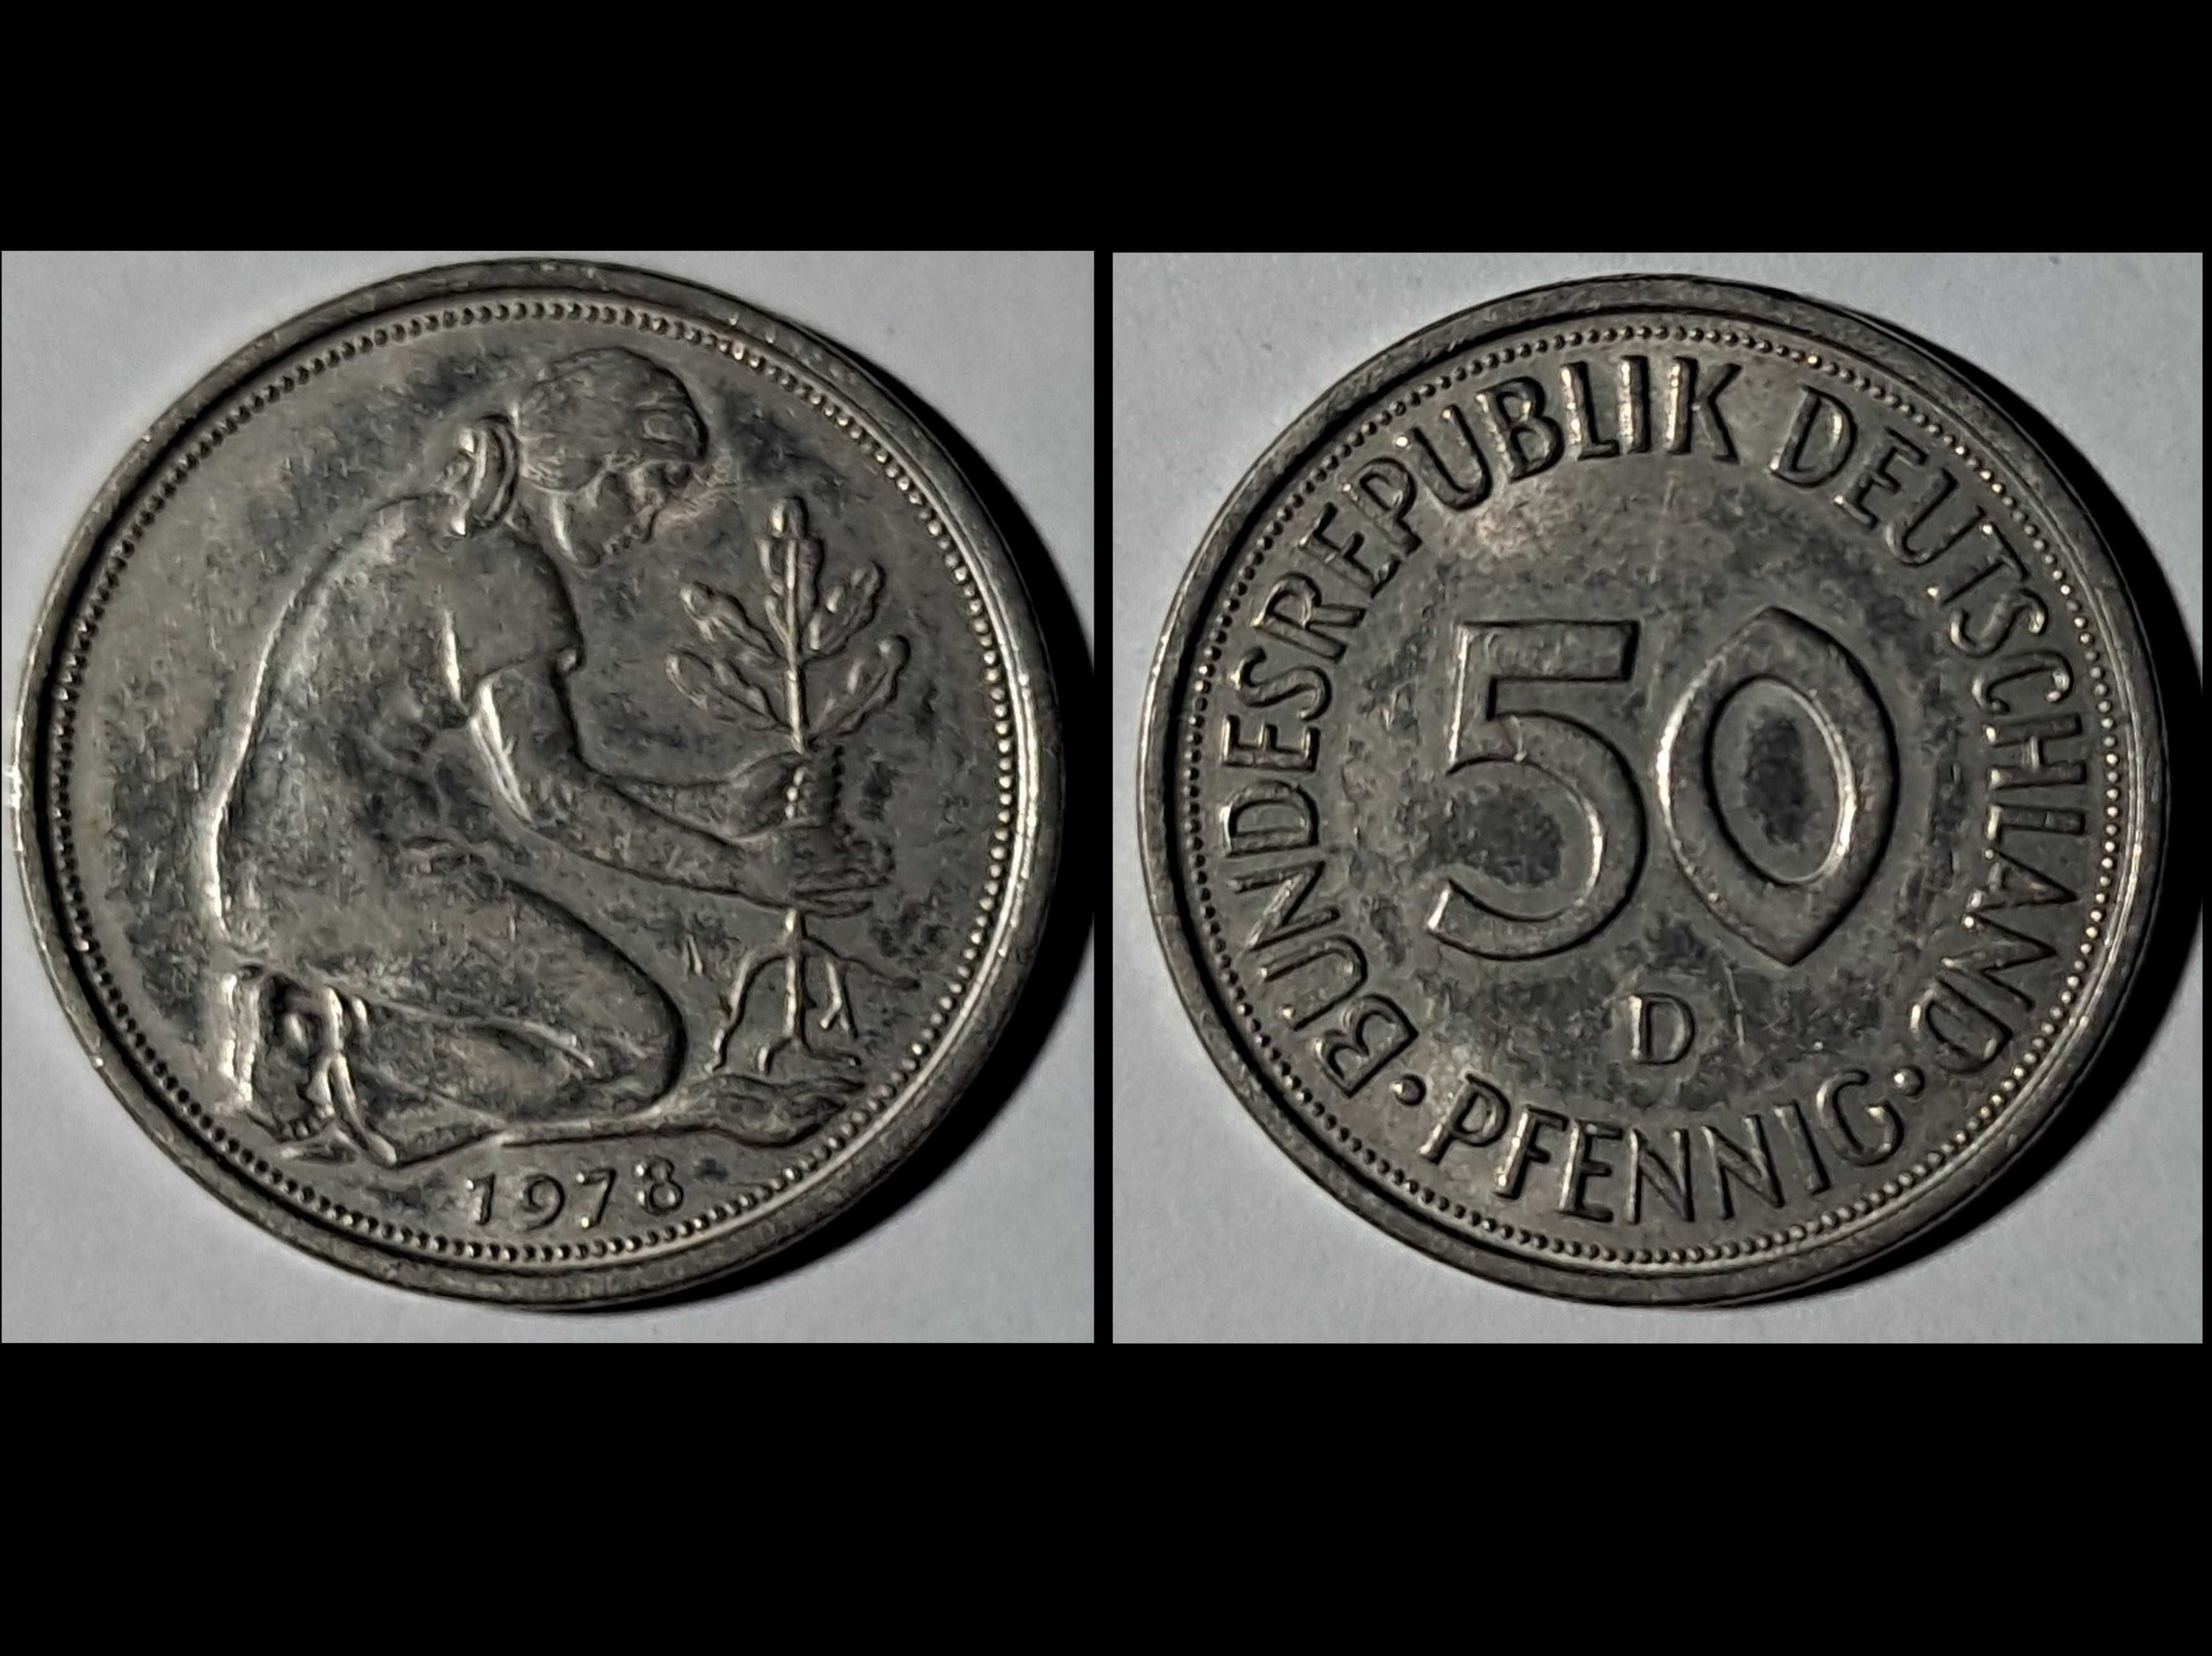 50 Pfennig - Niemcy Zachod. (RFN) - (CuNi) - 1978 rok - stan b .dobry